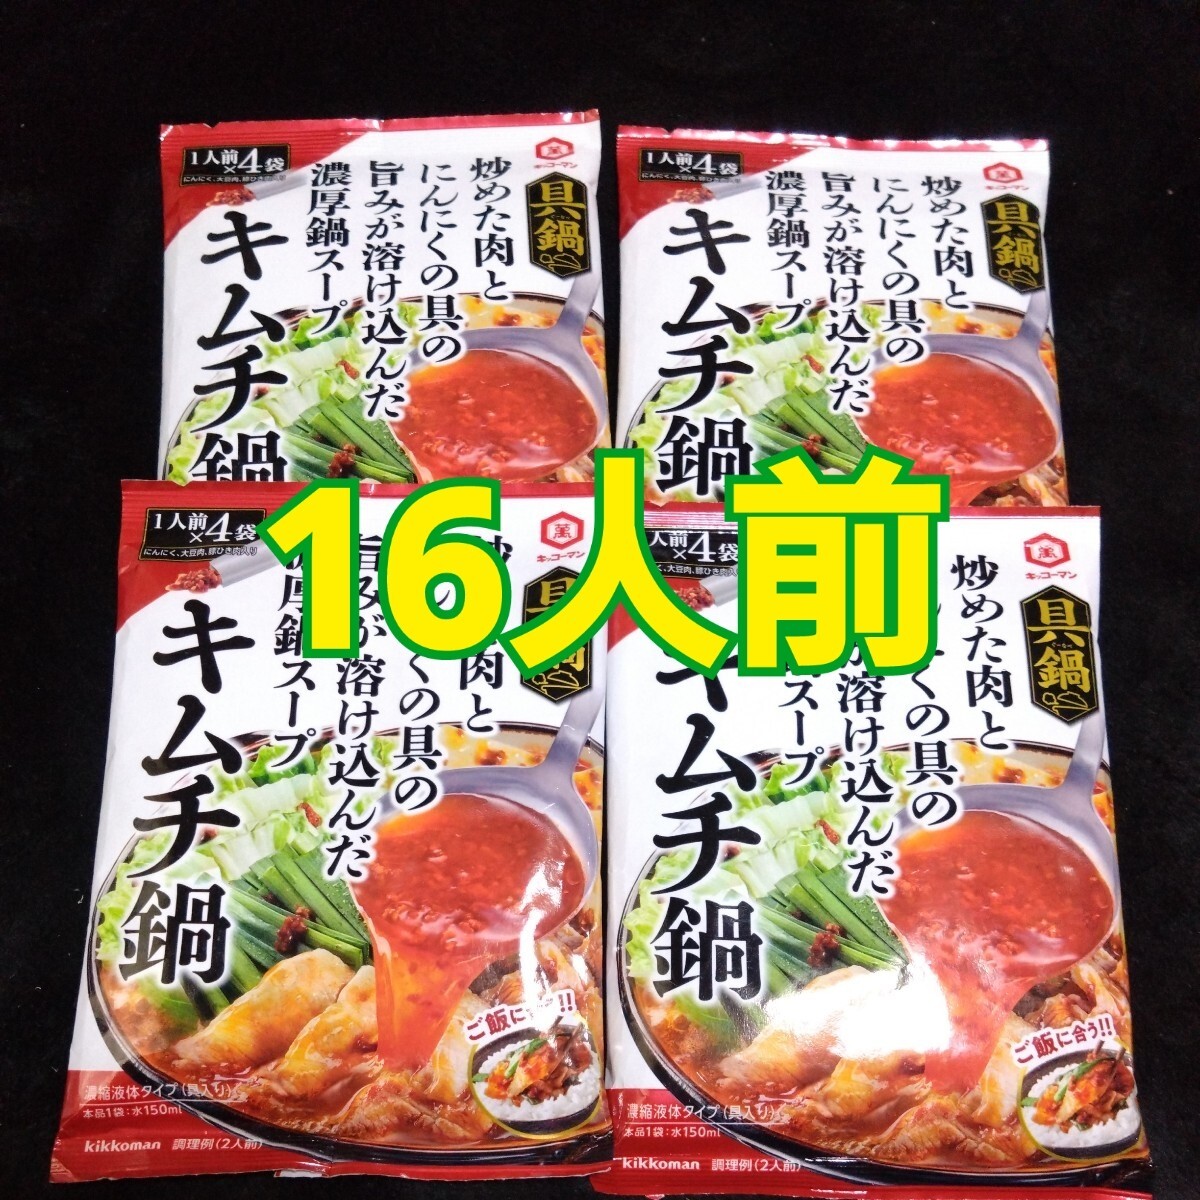 6 месяц 3 до. ограничение цена # 1558 иен товар #. кастрюля кимчи кастрюля 4 пакет 